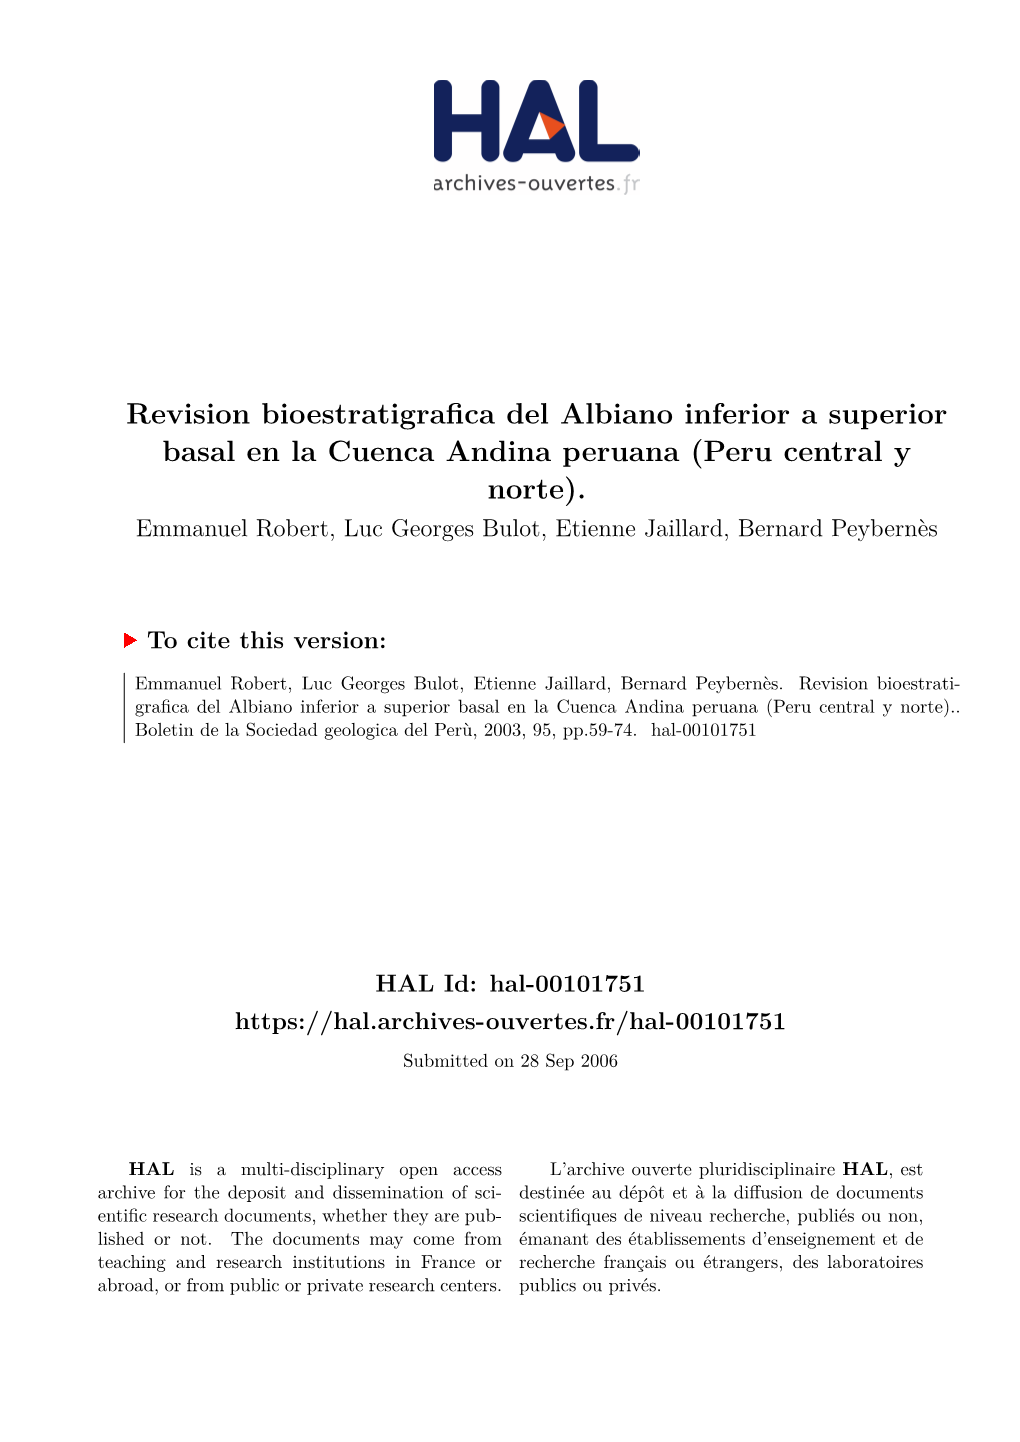 Revision Bioestratigrafica Del Albiano Inferior a Superior Basal En La Cuenca Andina Peruana (Peru Central Y Norte)